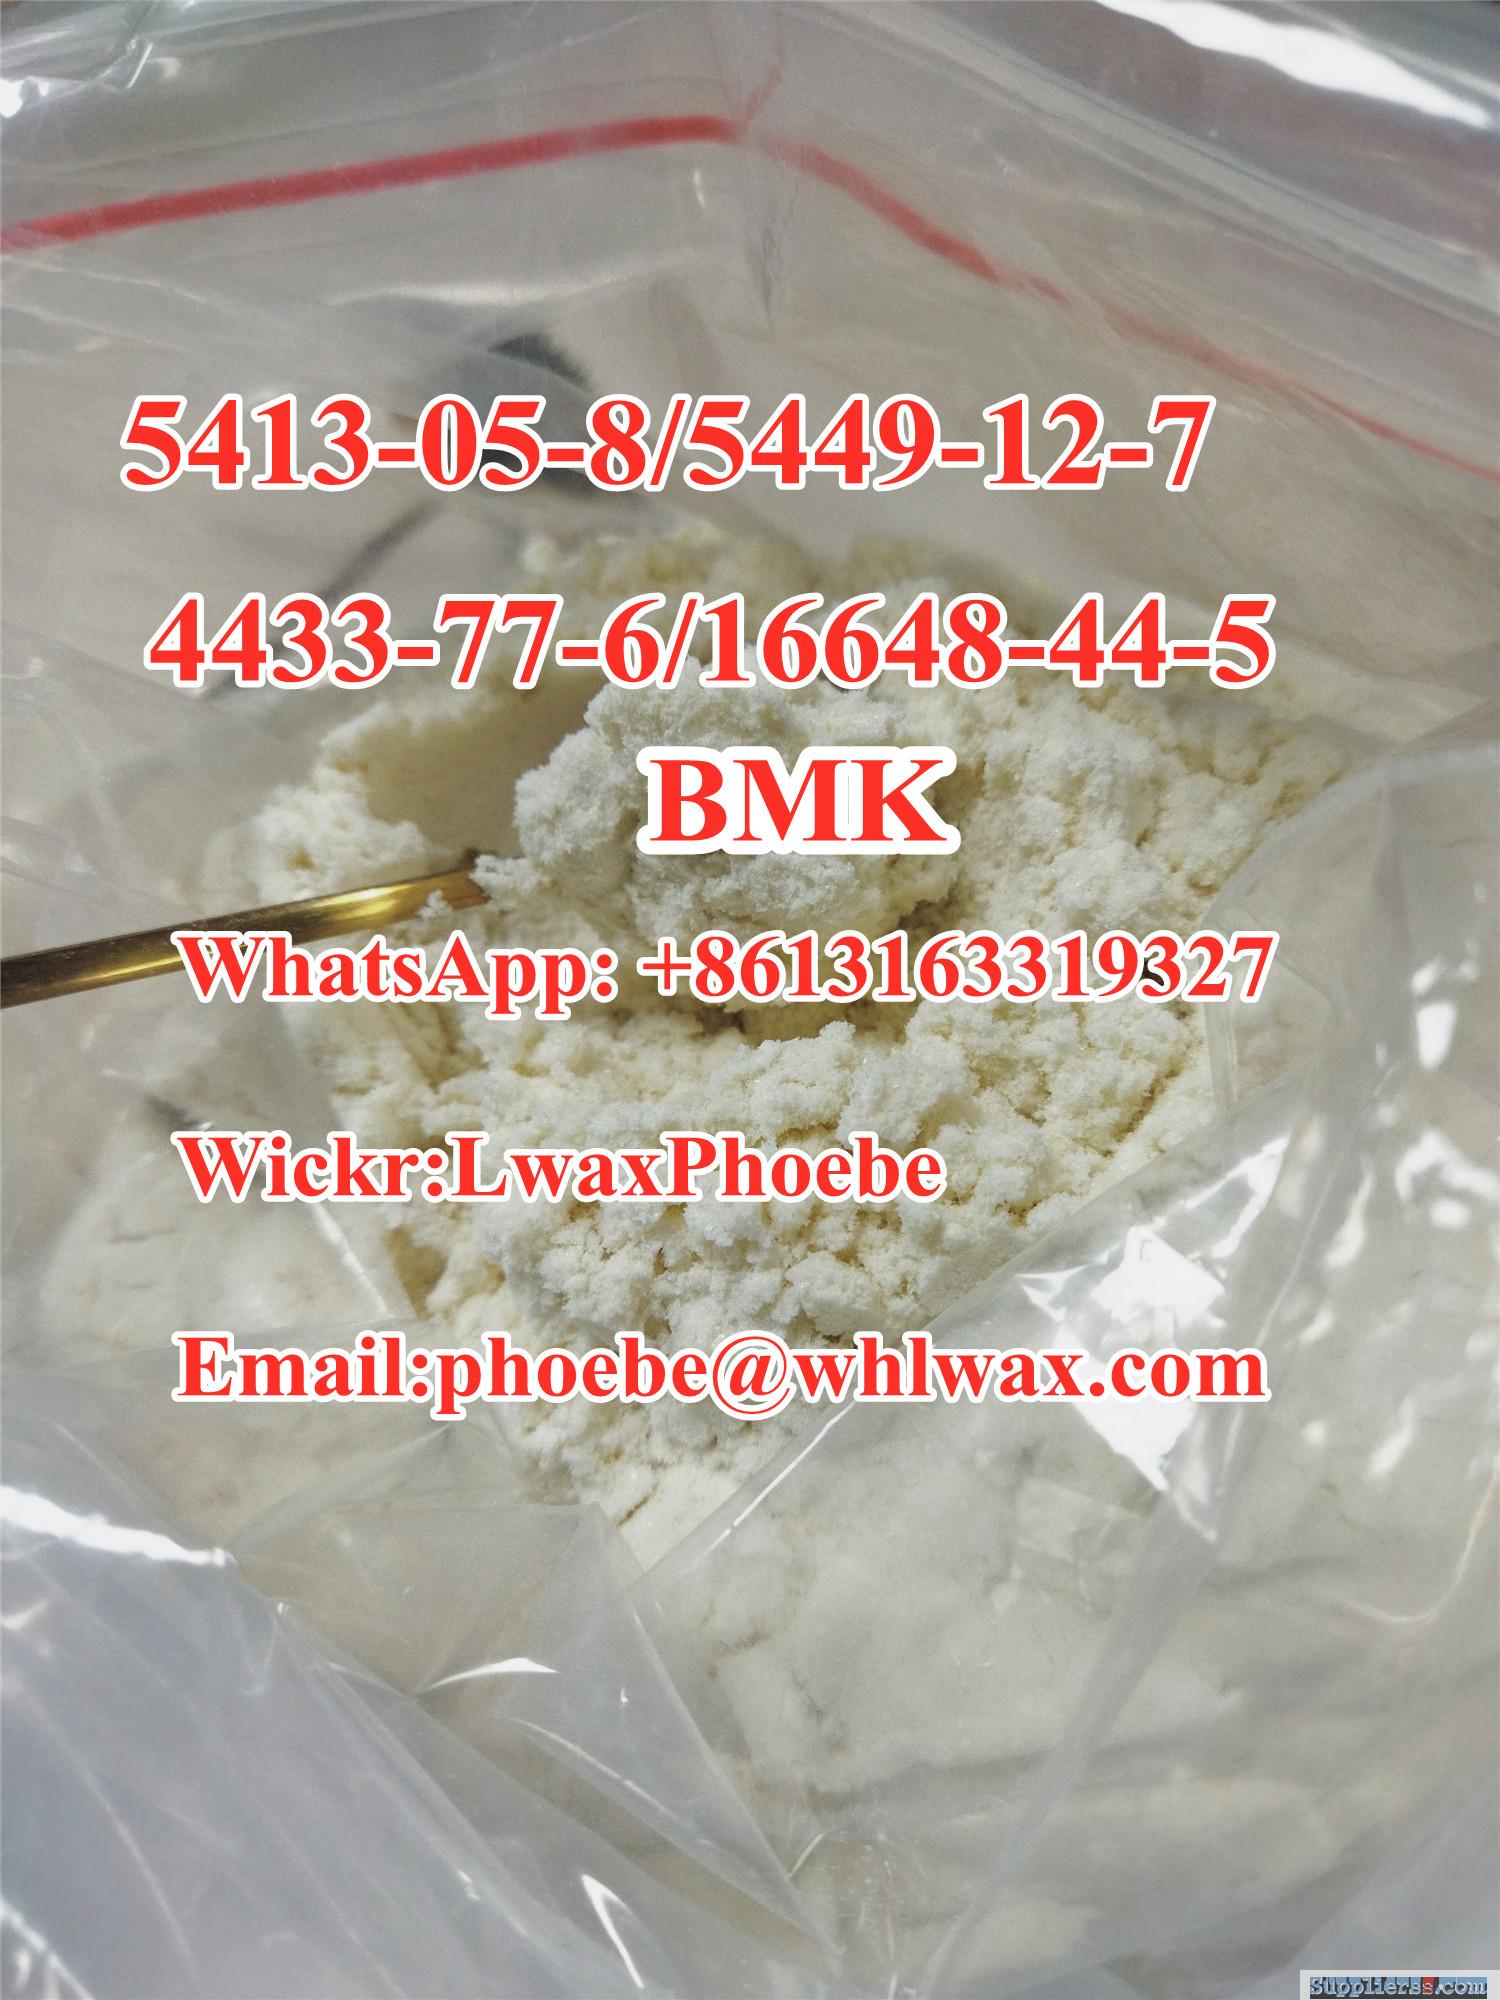 Bmk Glycidate Powder Cas 4433-77-6/16648-44-5 Powder Whastapp:+8613163319327